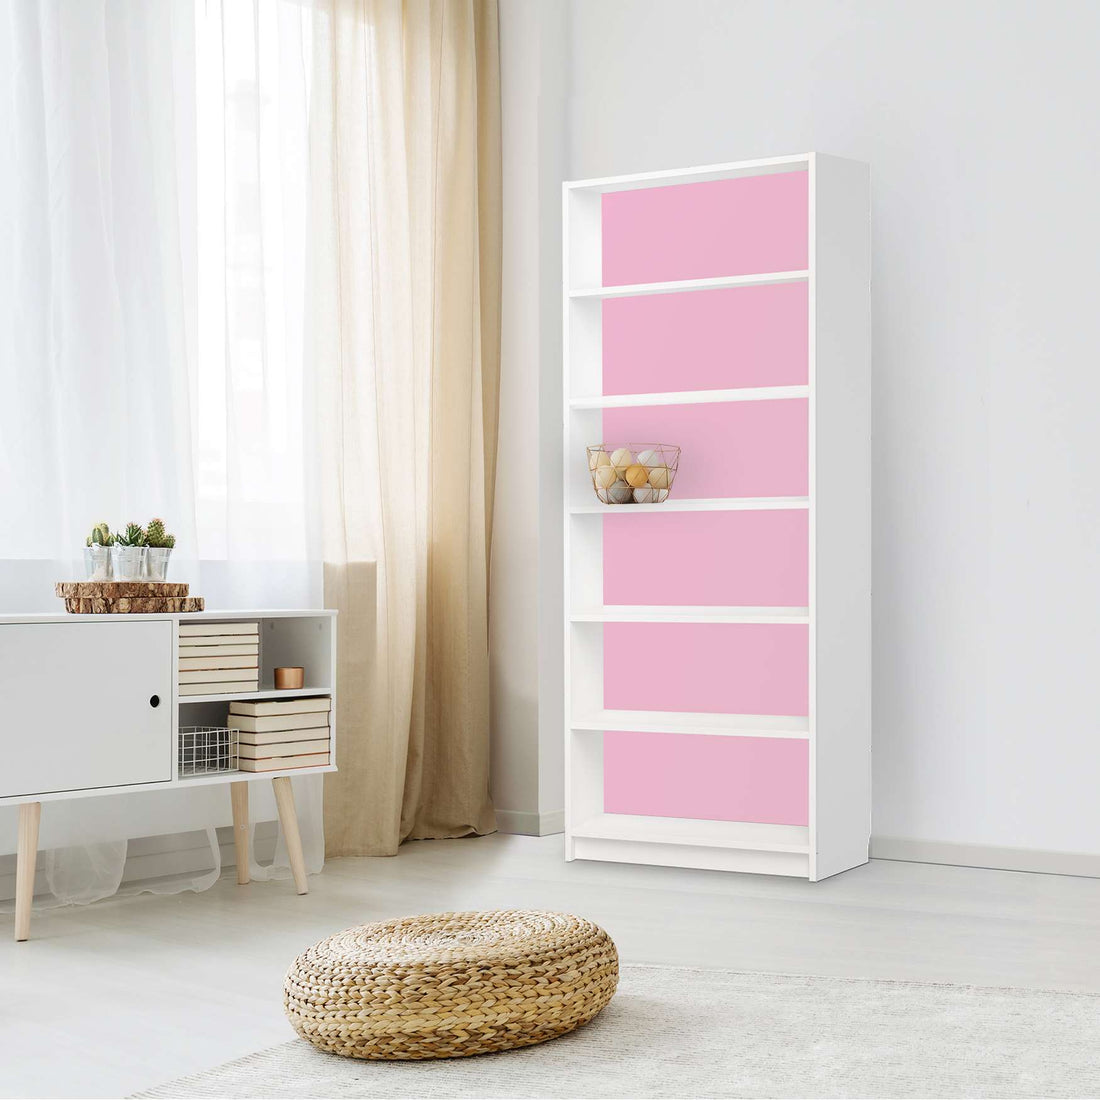 Klebefolie Pink Light - IKEA Billy Regal 6 Fächer - Wohnzimmer